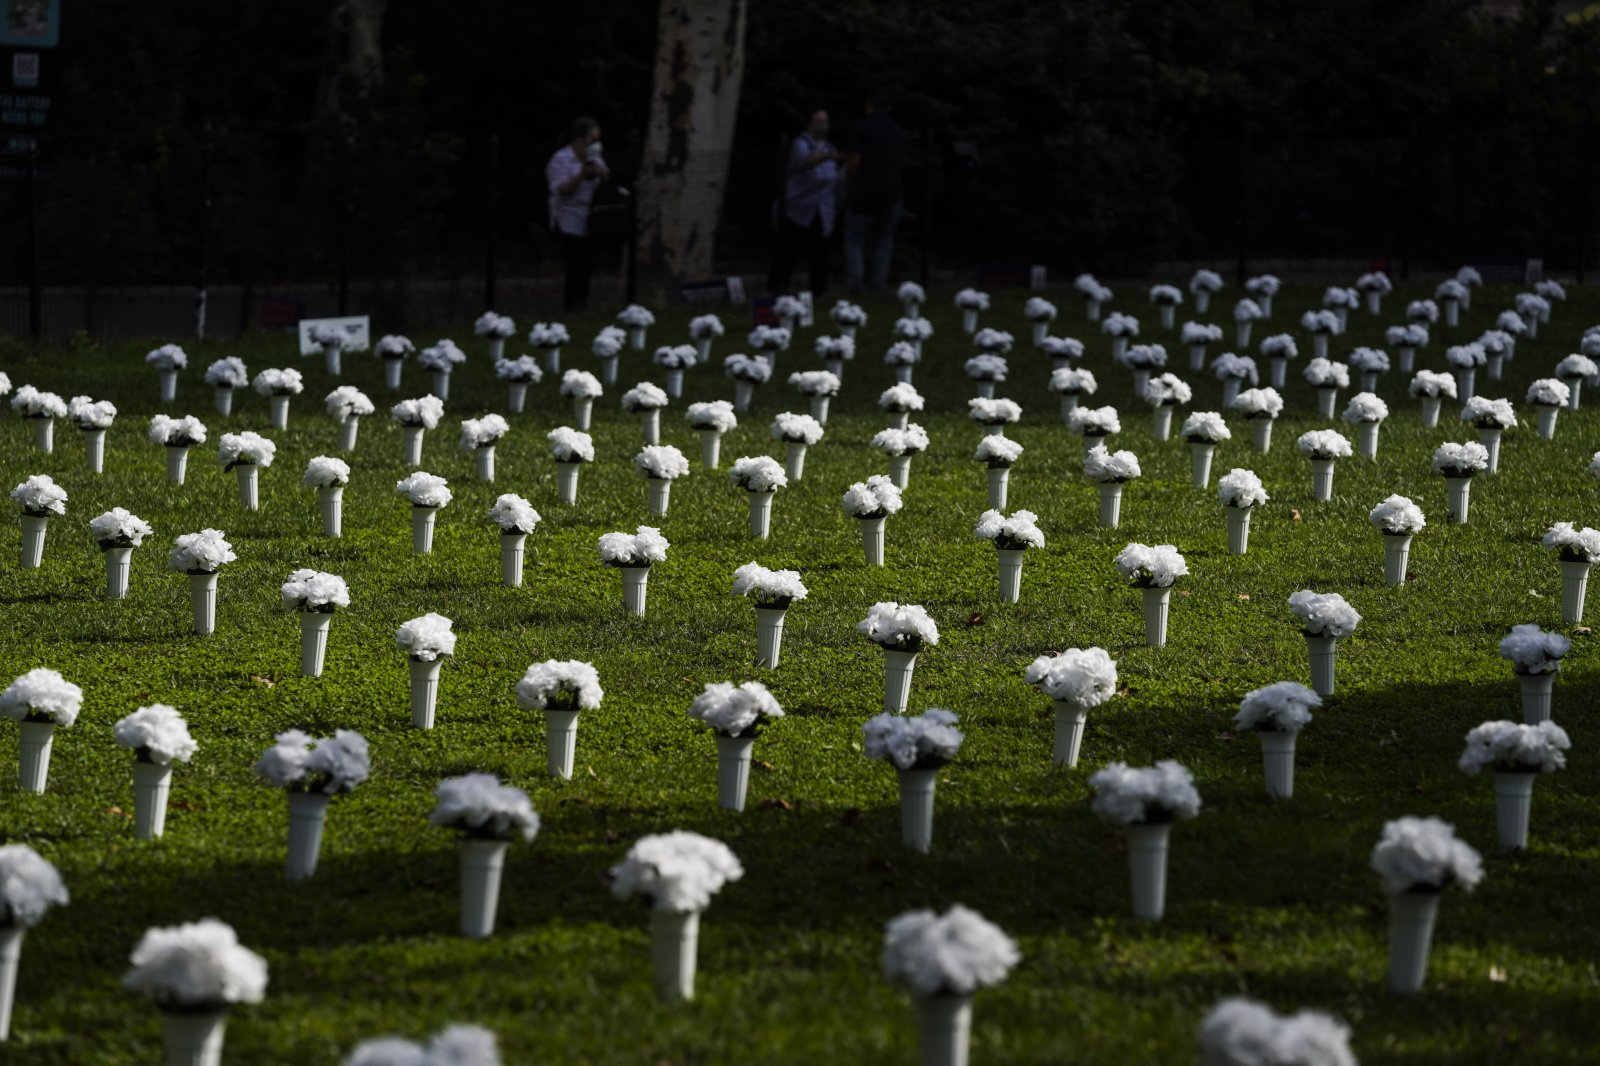 這是2021年10月8日在美國紐約炮台公園內拍攝的為悼念槍支暴力遇難者擺放的白色瓶花。據主辦方介紹，這個由1050個白色瓶花組成的大型紀念裝置旨在悼念2020年在紐約州死於槍支暴力的1050名受害者，呼籲政府針對槍支暴力採取行動。